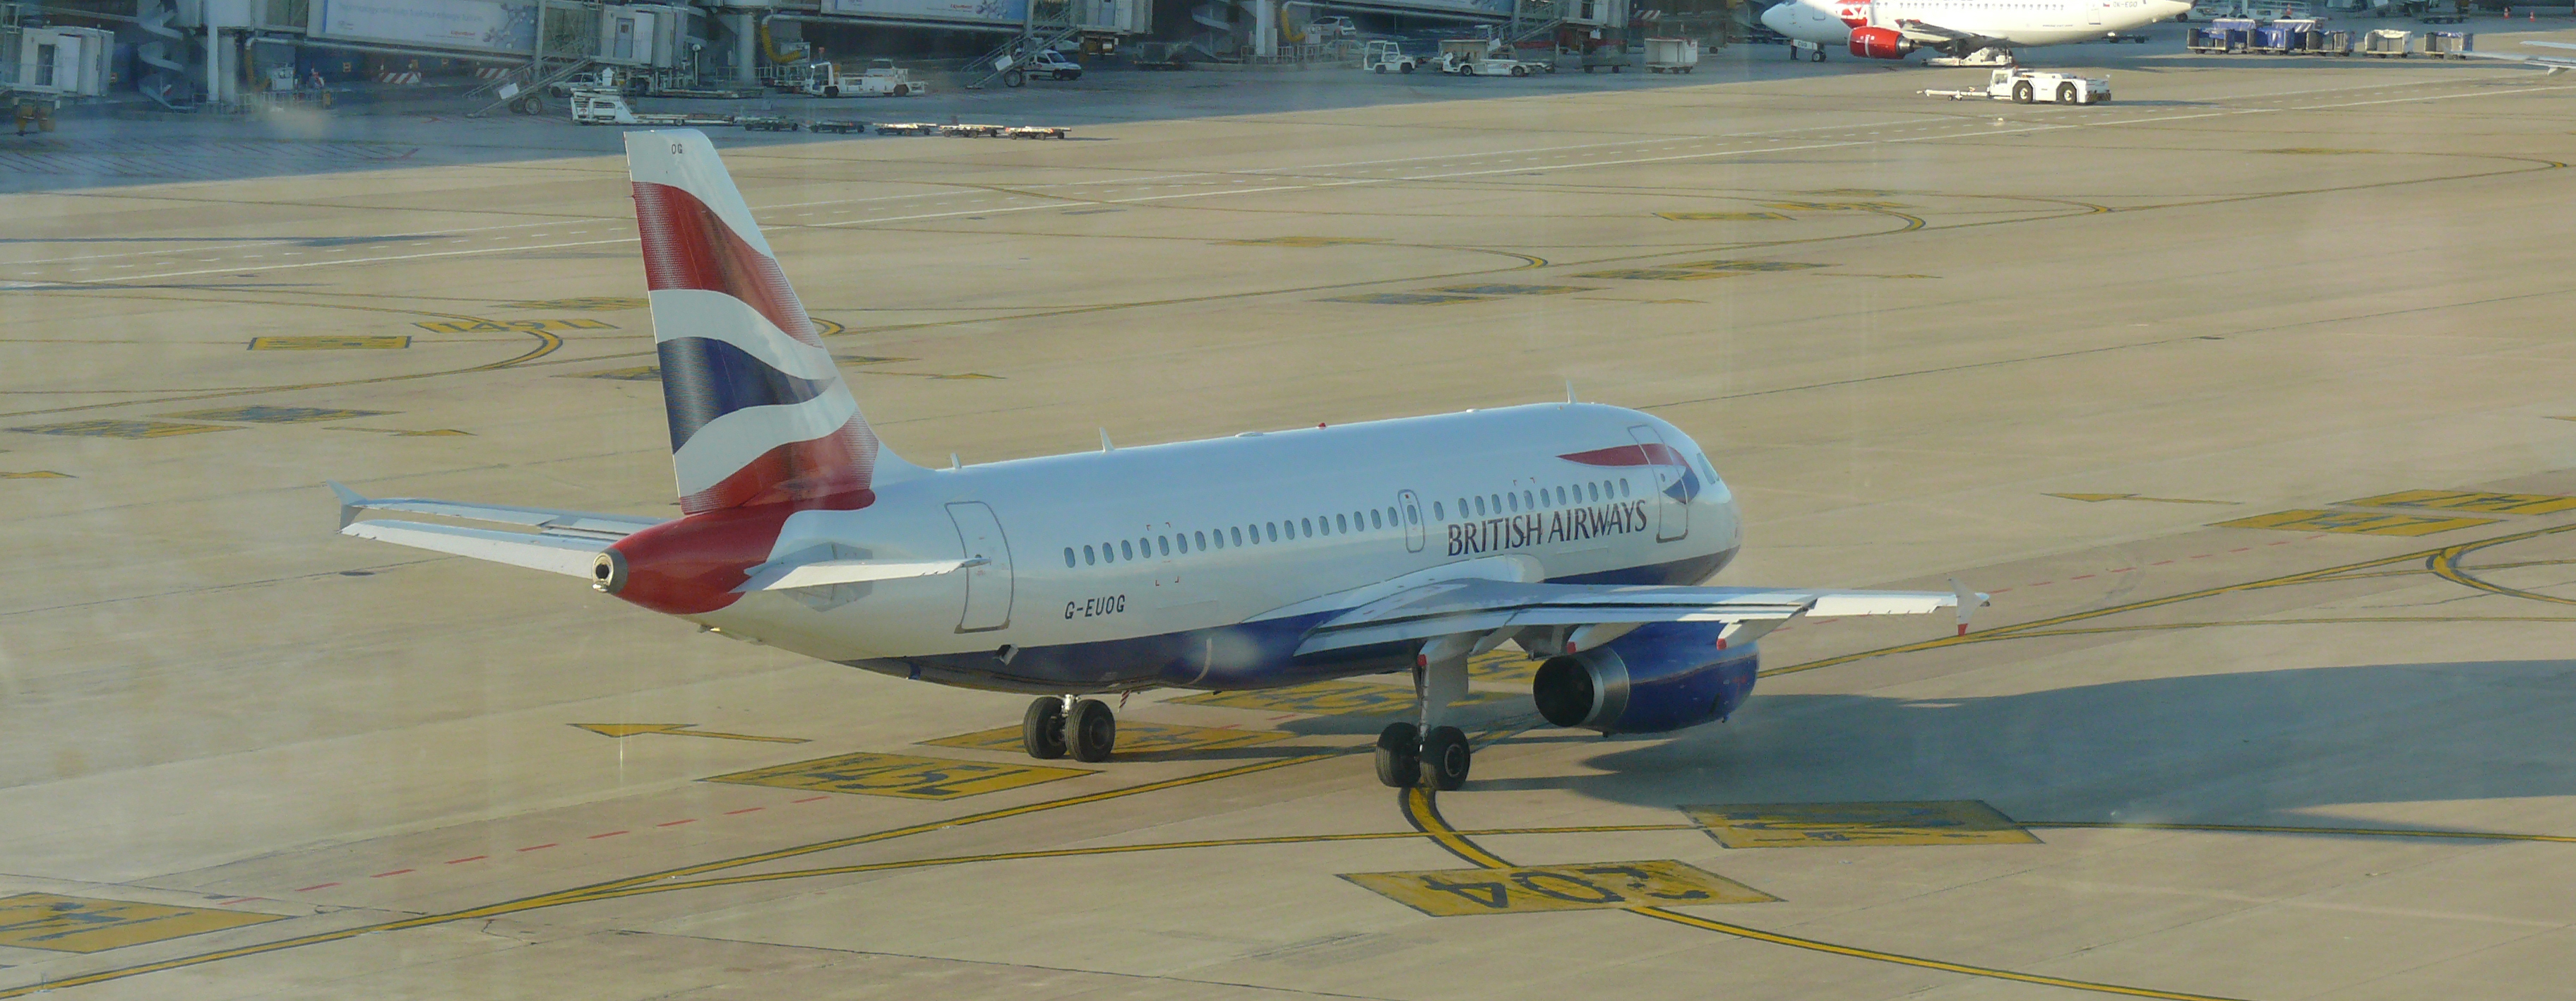 British Airways G-EUOG